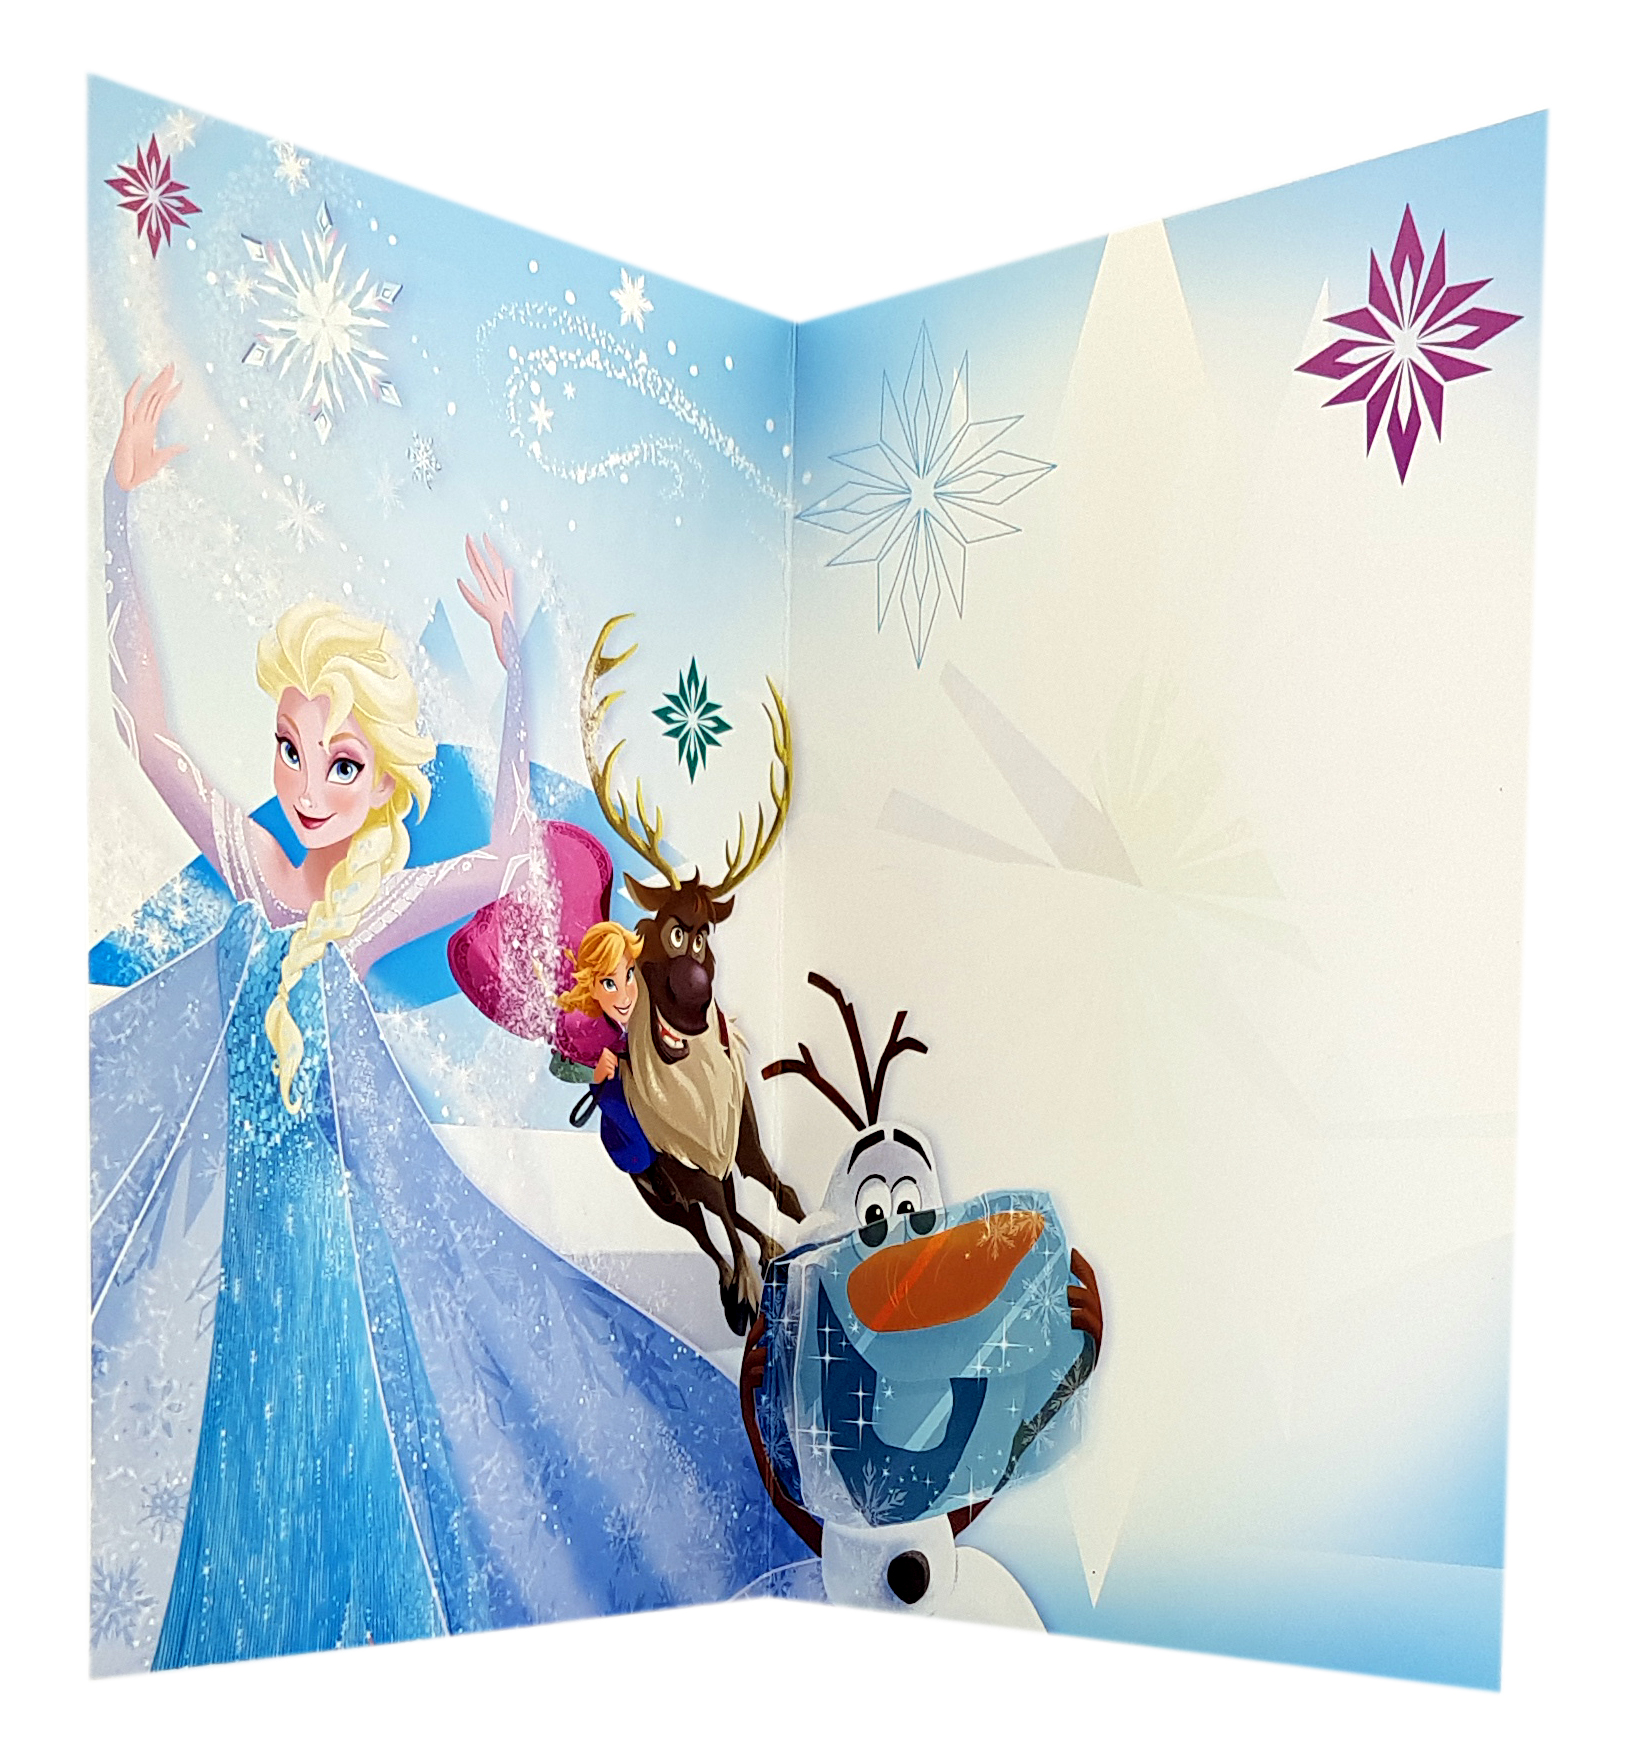 Carte Disney Joyeux Anniversaire Reine Des Neiges Elsa Olaf Anna Christophe Et Sven Ref 99 Cartes Anniversaire Anniversaire Theme Reine Des Neiges Disney Dianne Style